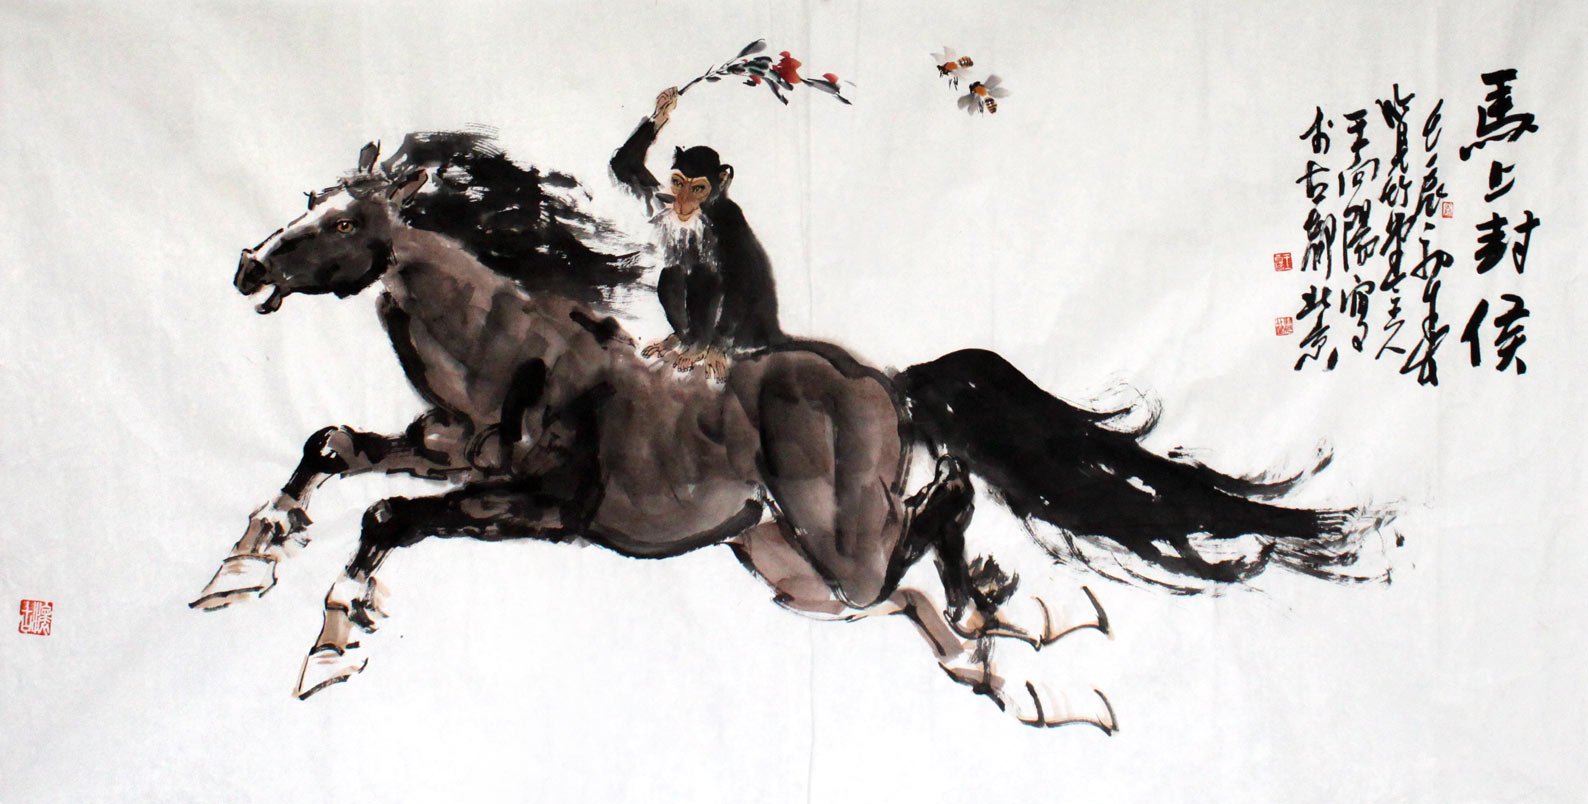 Мужчина лошадь и обезьяна. Картина обезьяна на лошади. Обезьяна на лошади верхом. Обезьяна на коне. Китайская лошадь.